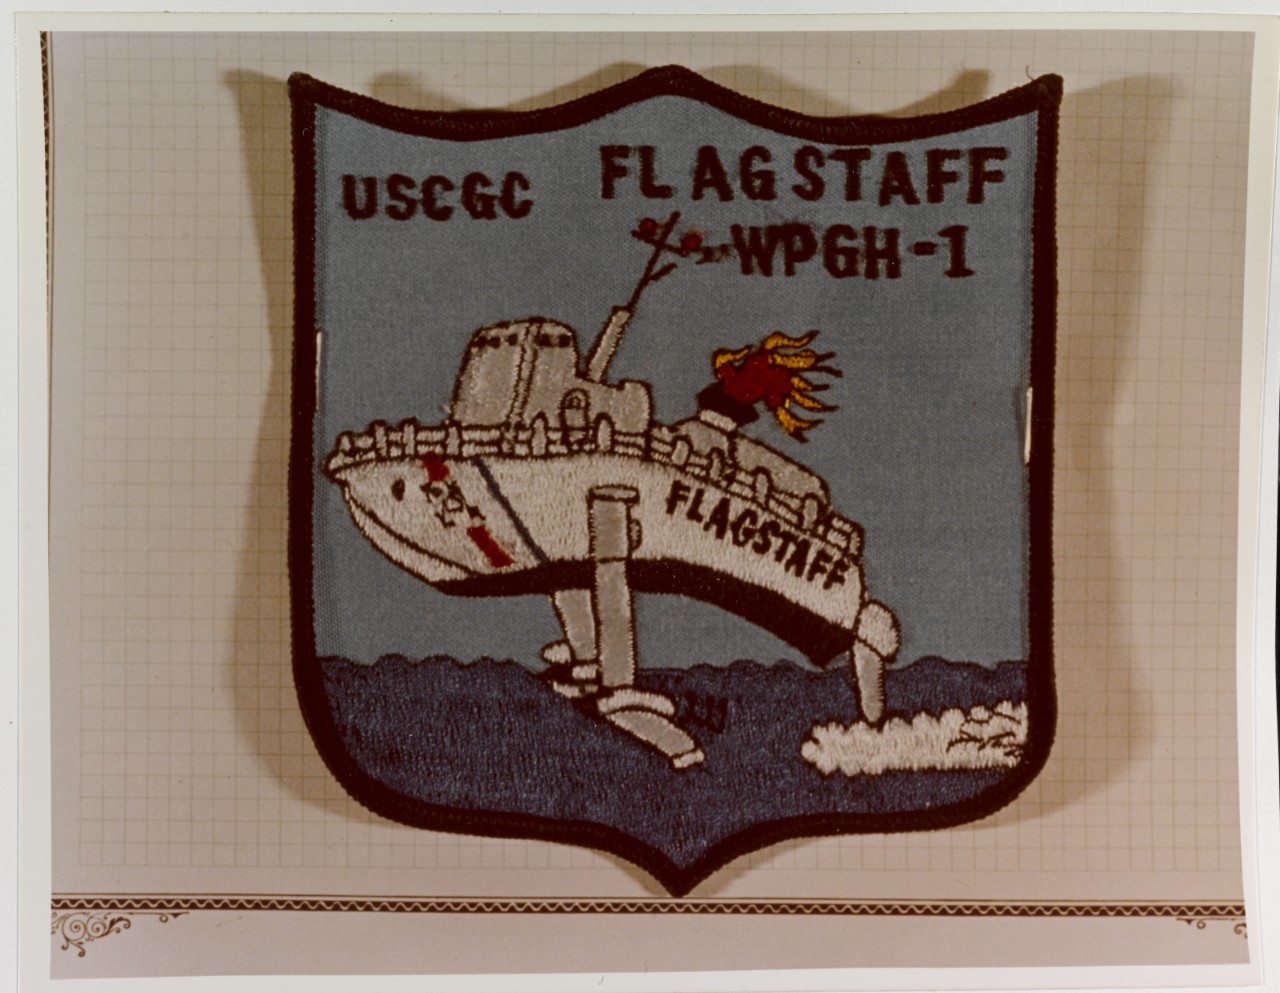 Insignia: U.S. Coast Guard Cutter FLAGSTAFF (WPGH-1)